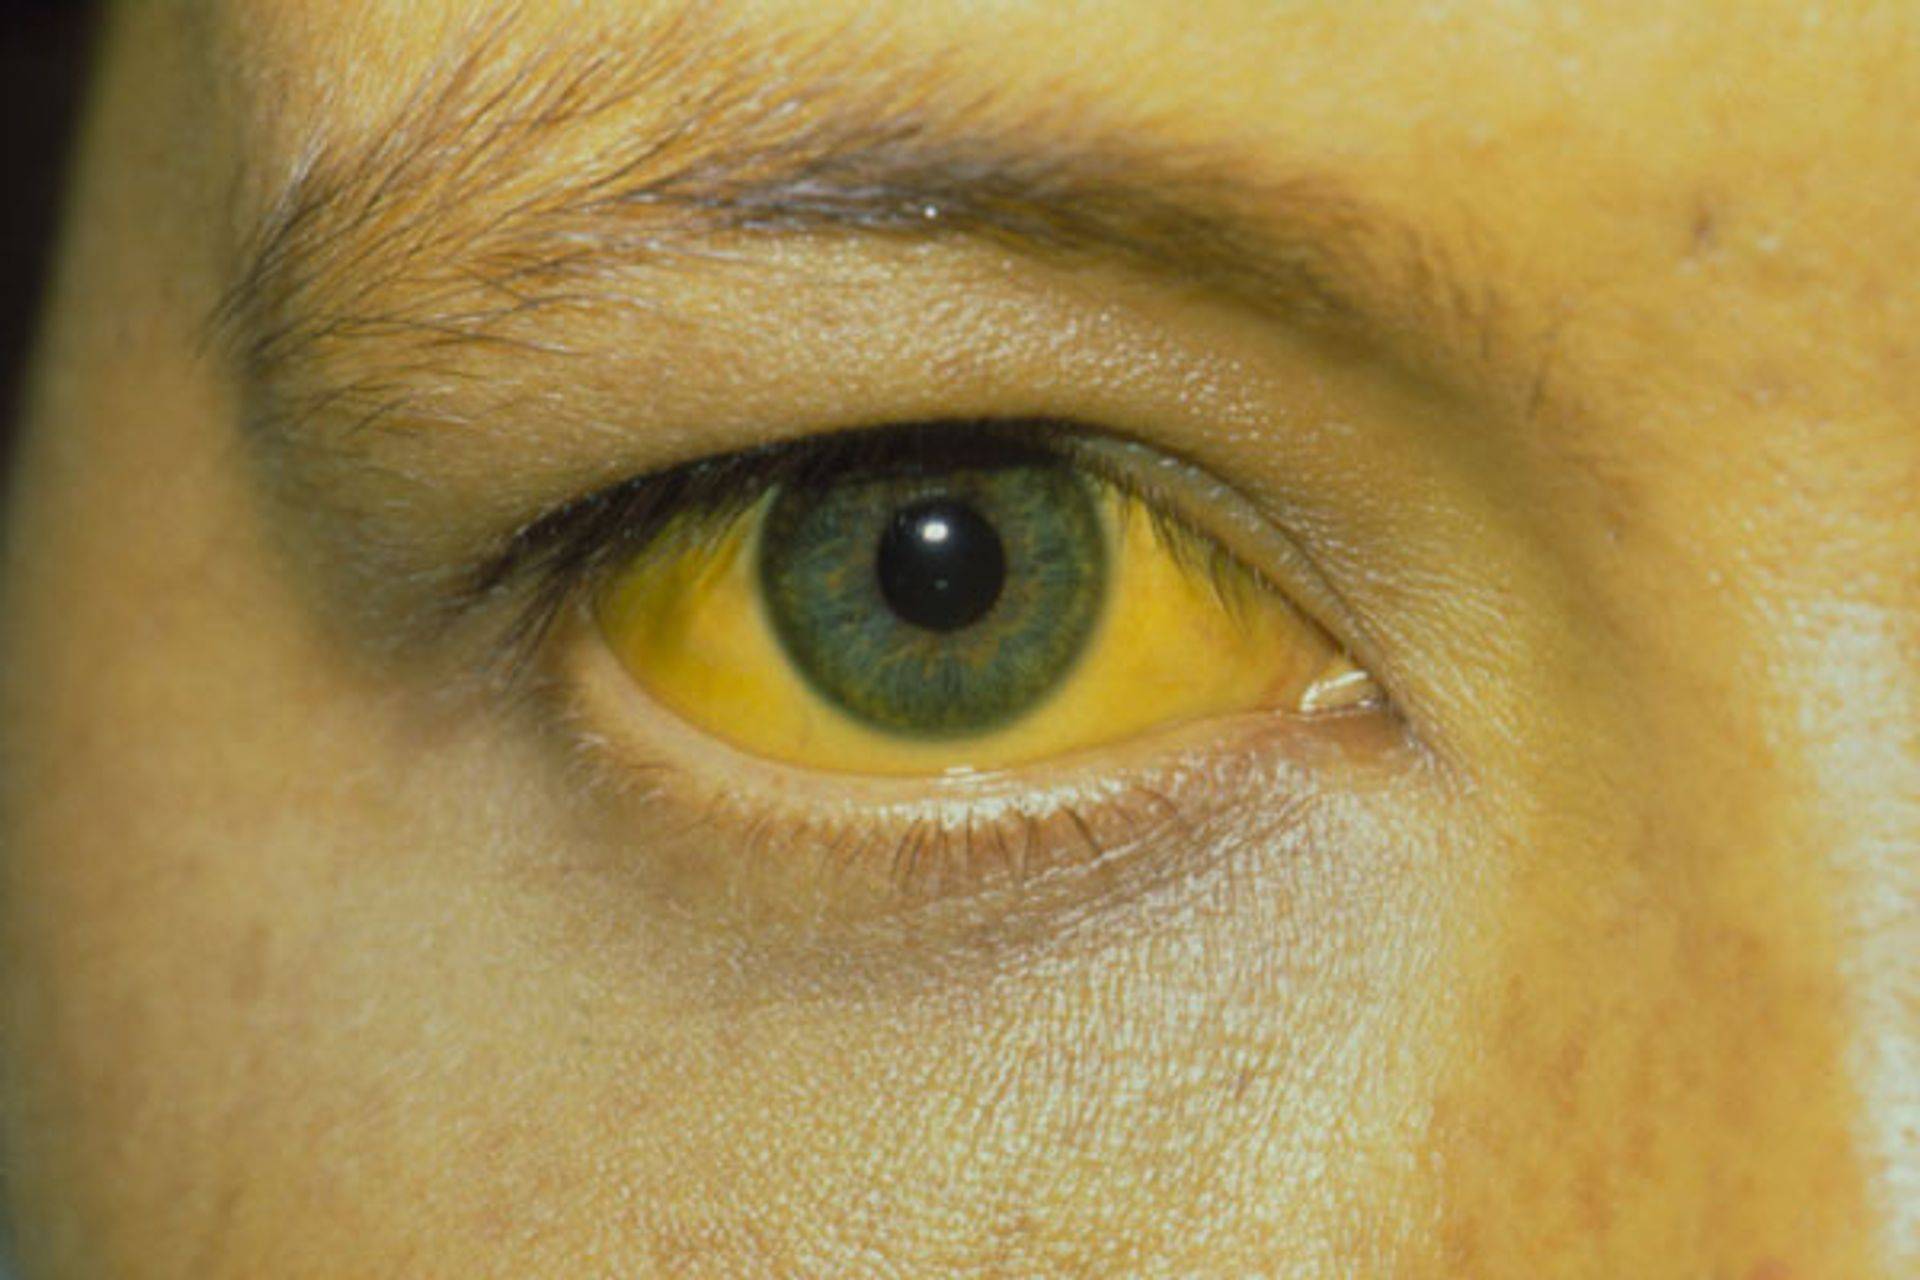 Гепатит а это желтуха. Гемолитическая желтуха болезнь Боткина. Желтуха кожи и склер при гепатите а. Пожелтение склер гепатит.